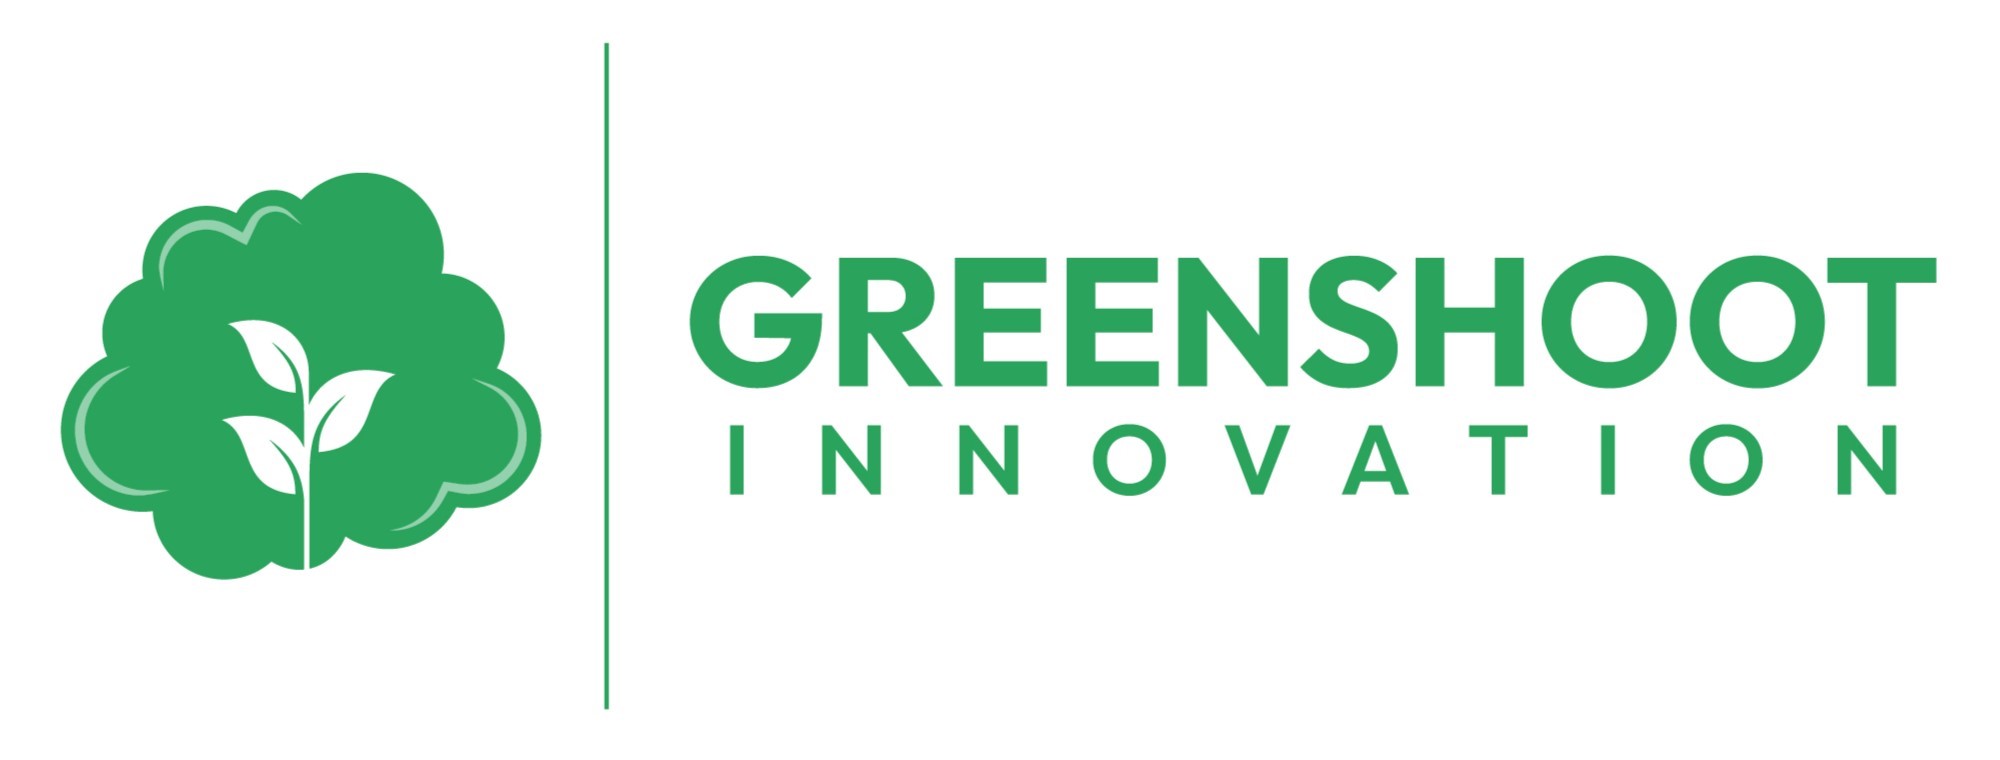 GreenShoot Innovation